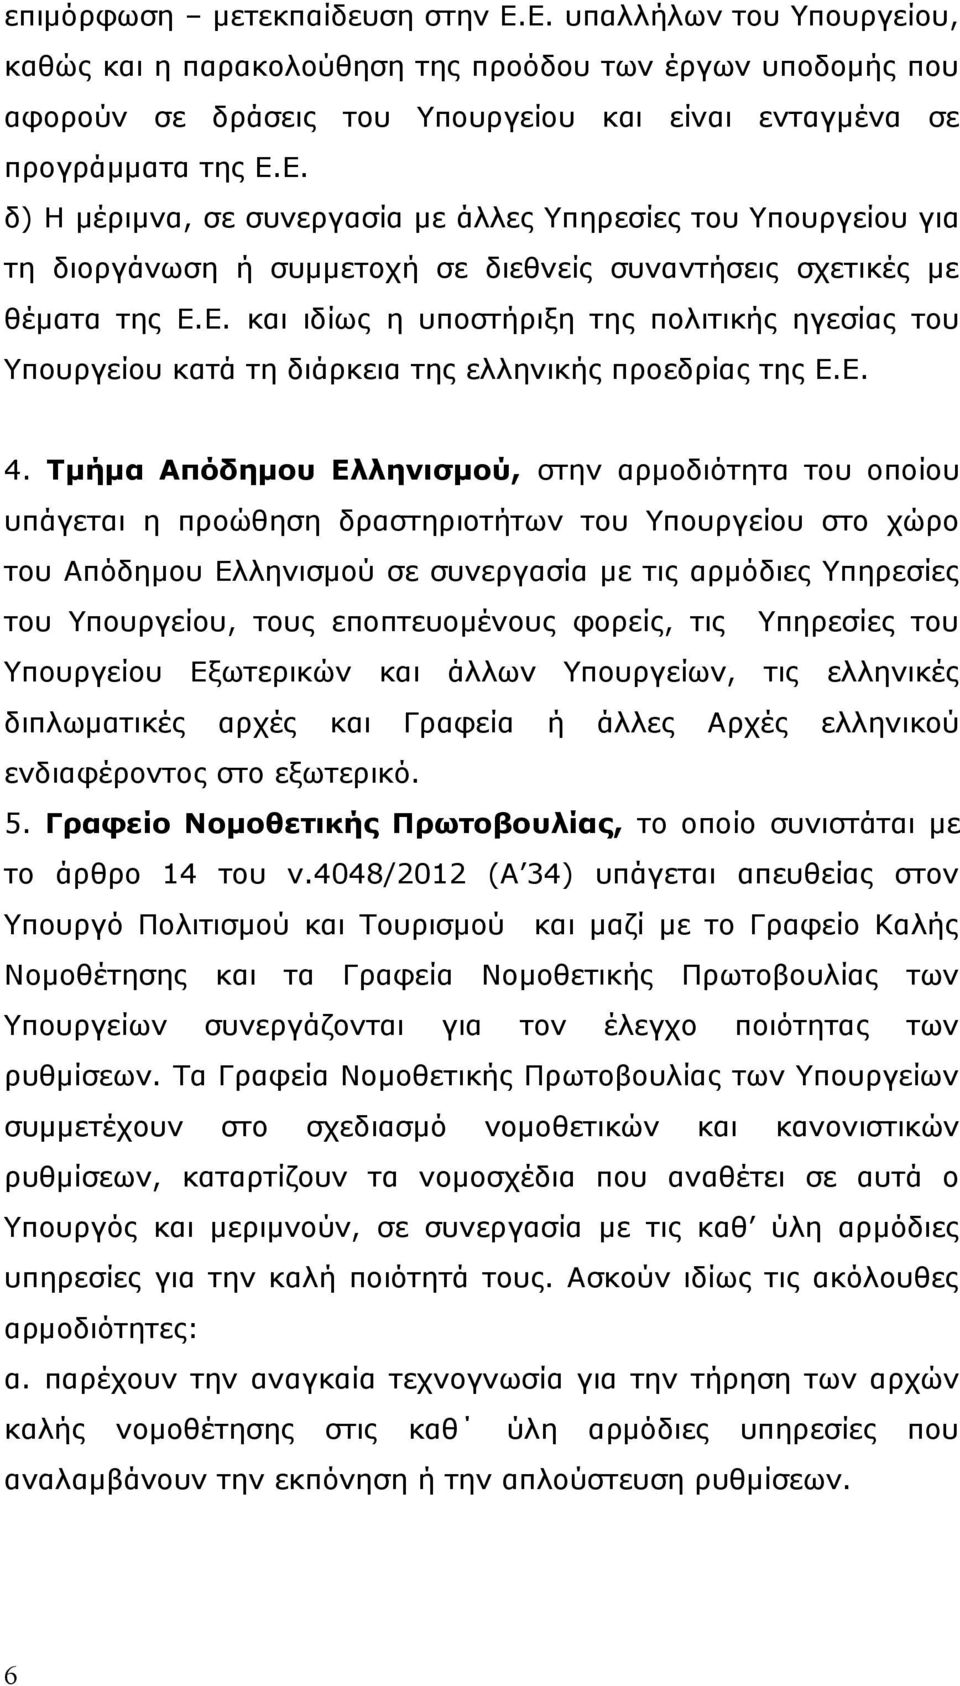 Τμήμα Απόδημου Ελληνισμού, στην αρμοδιότητα του οποίου υπάγεται η προώθηση δραστηριοτήτων του Υπουργείου στο χώρο του Απόδημου Ελληνισμού σε συνεργασία με τις αρμόδιες Υπηρεσίες του Υπουργείου, τους